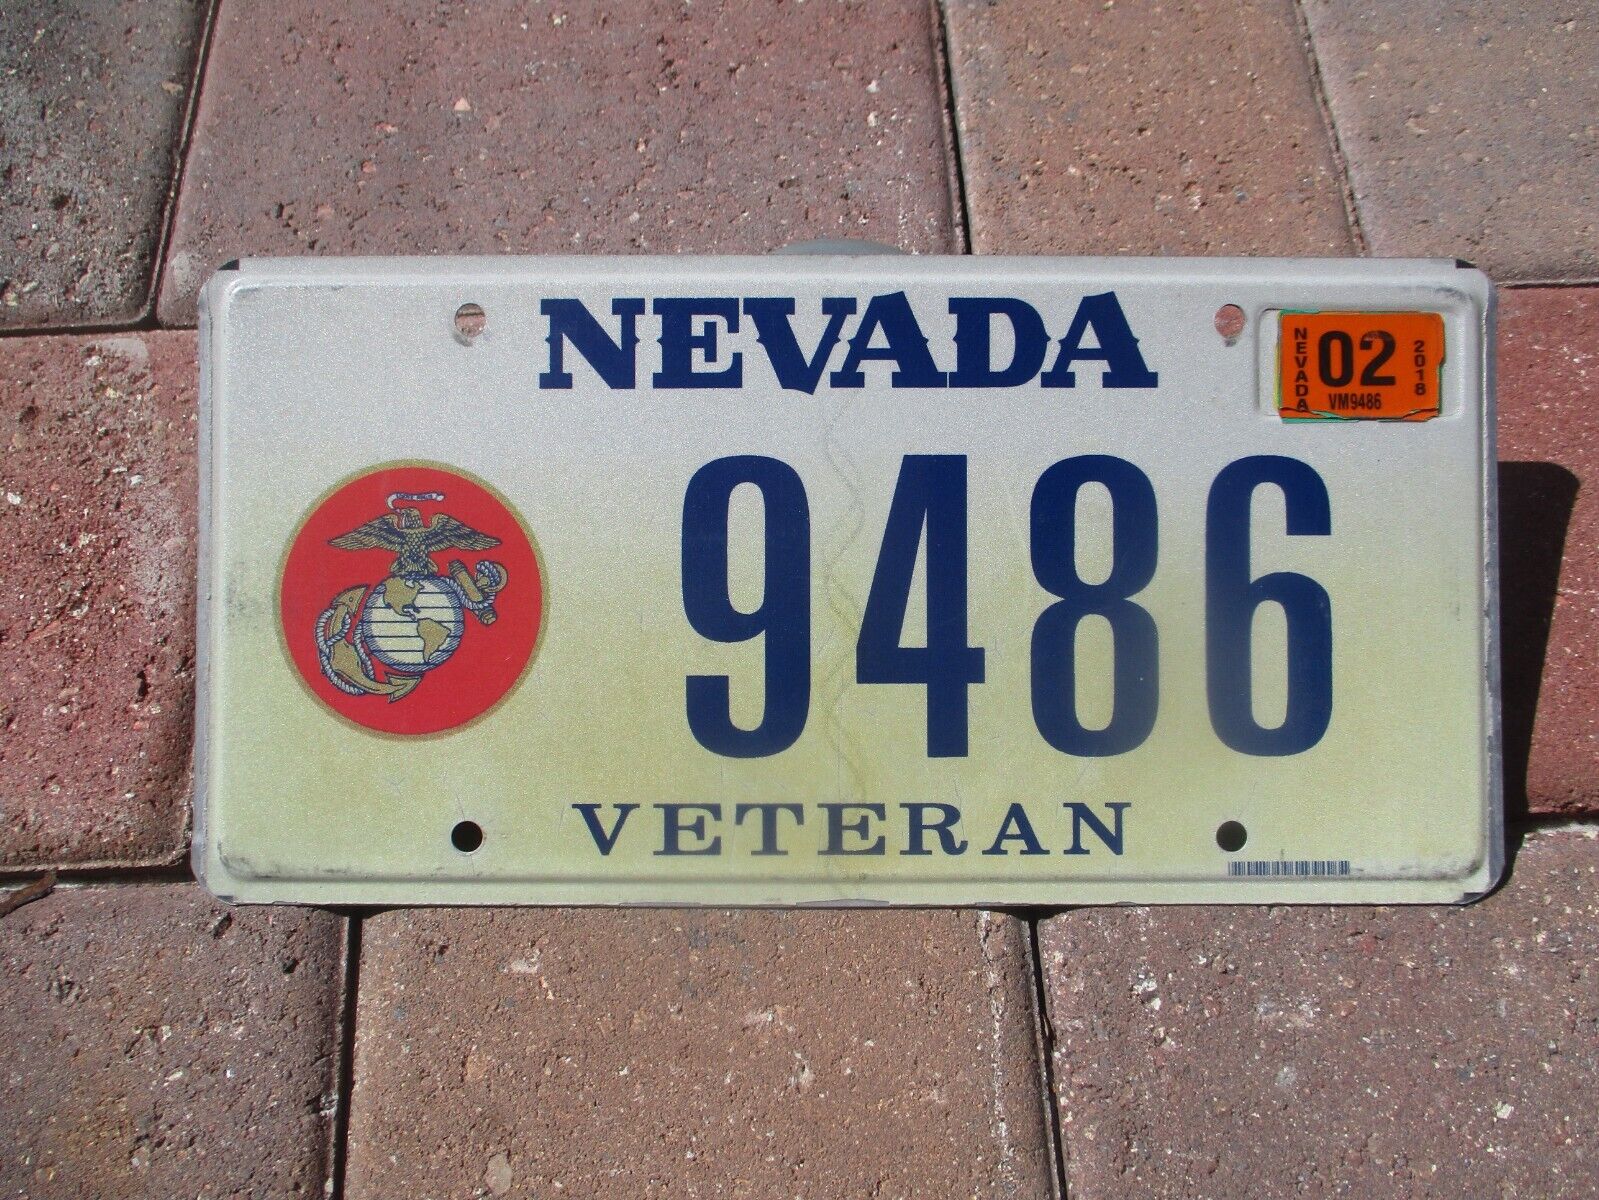 Nevada 2018 Veteran Marine Corps  license plate #  9486